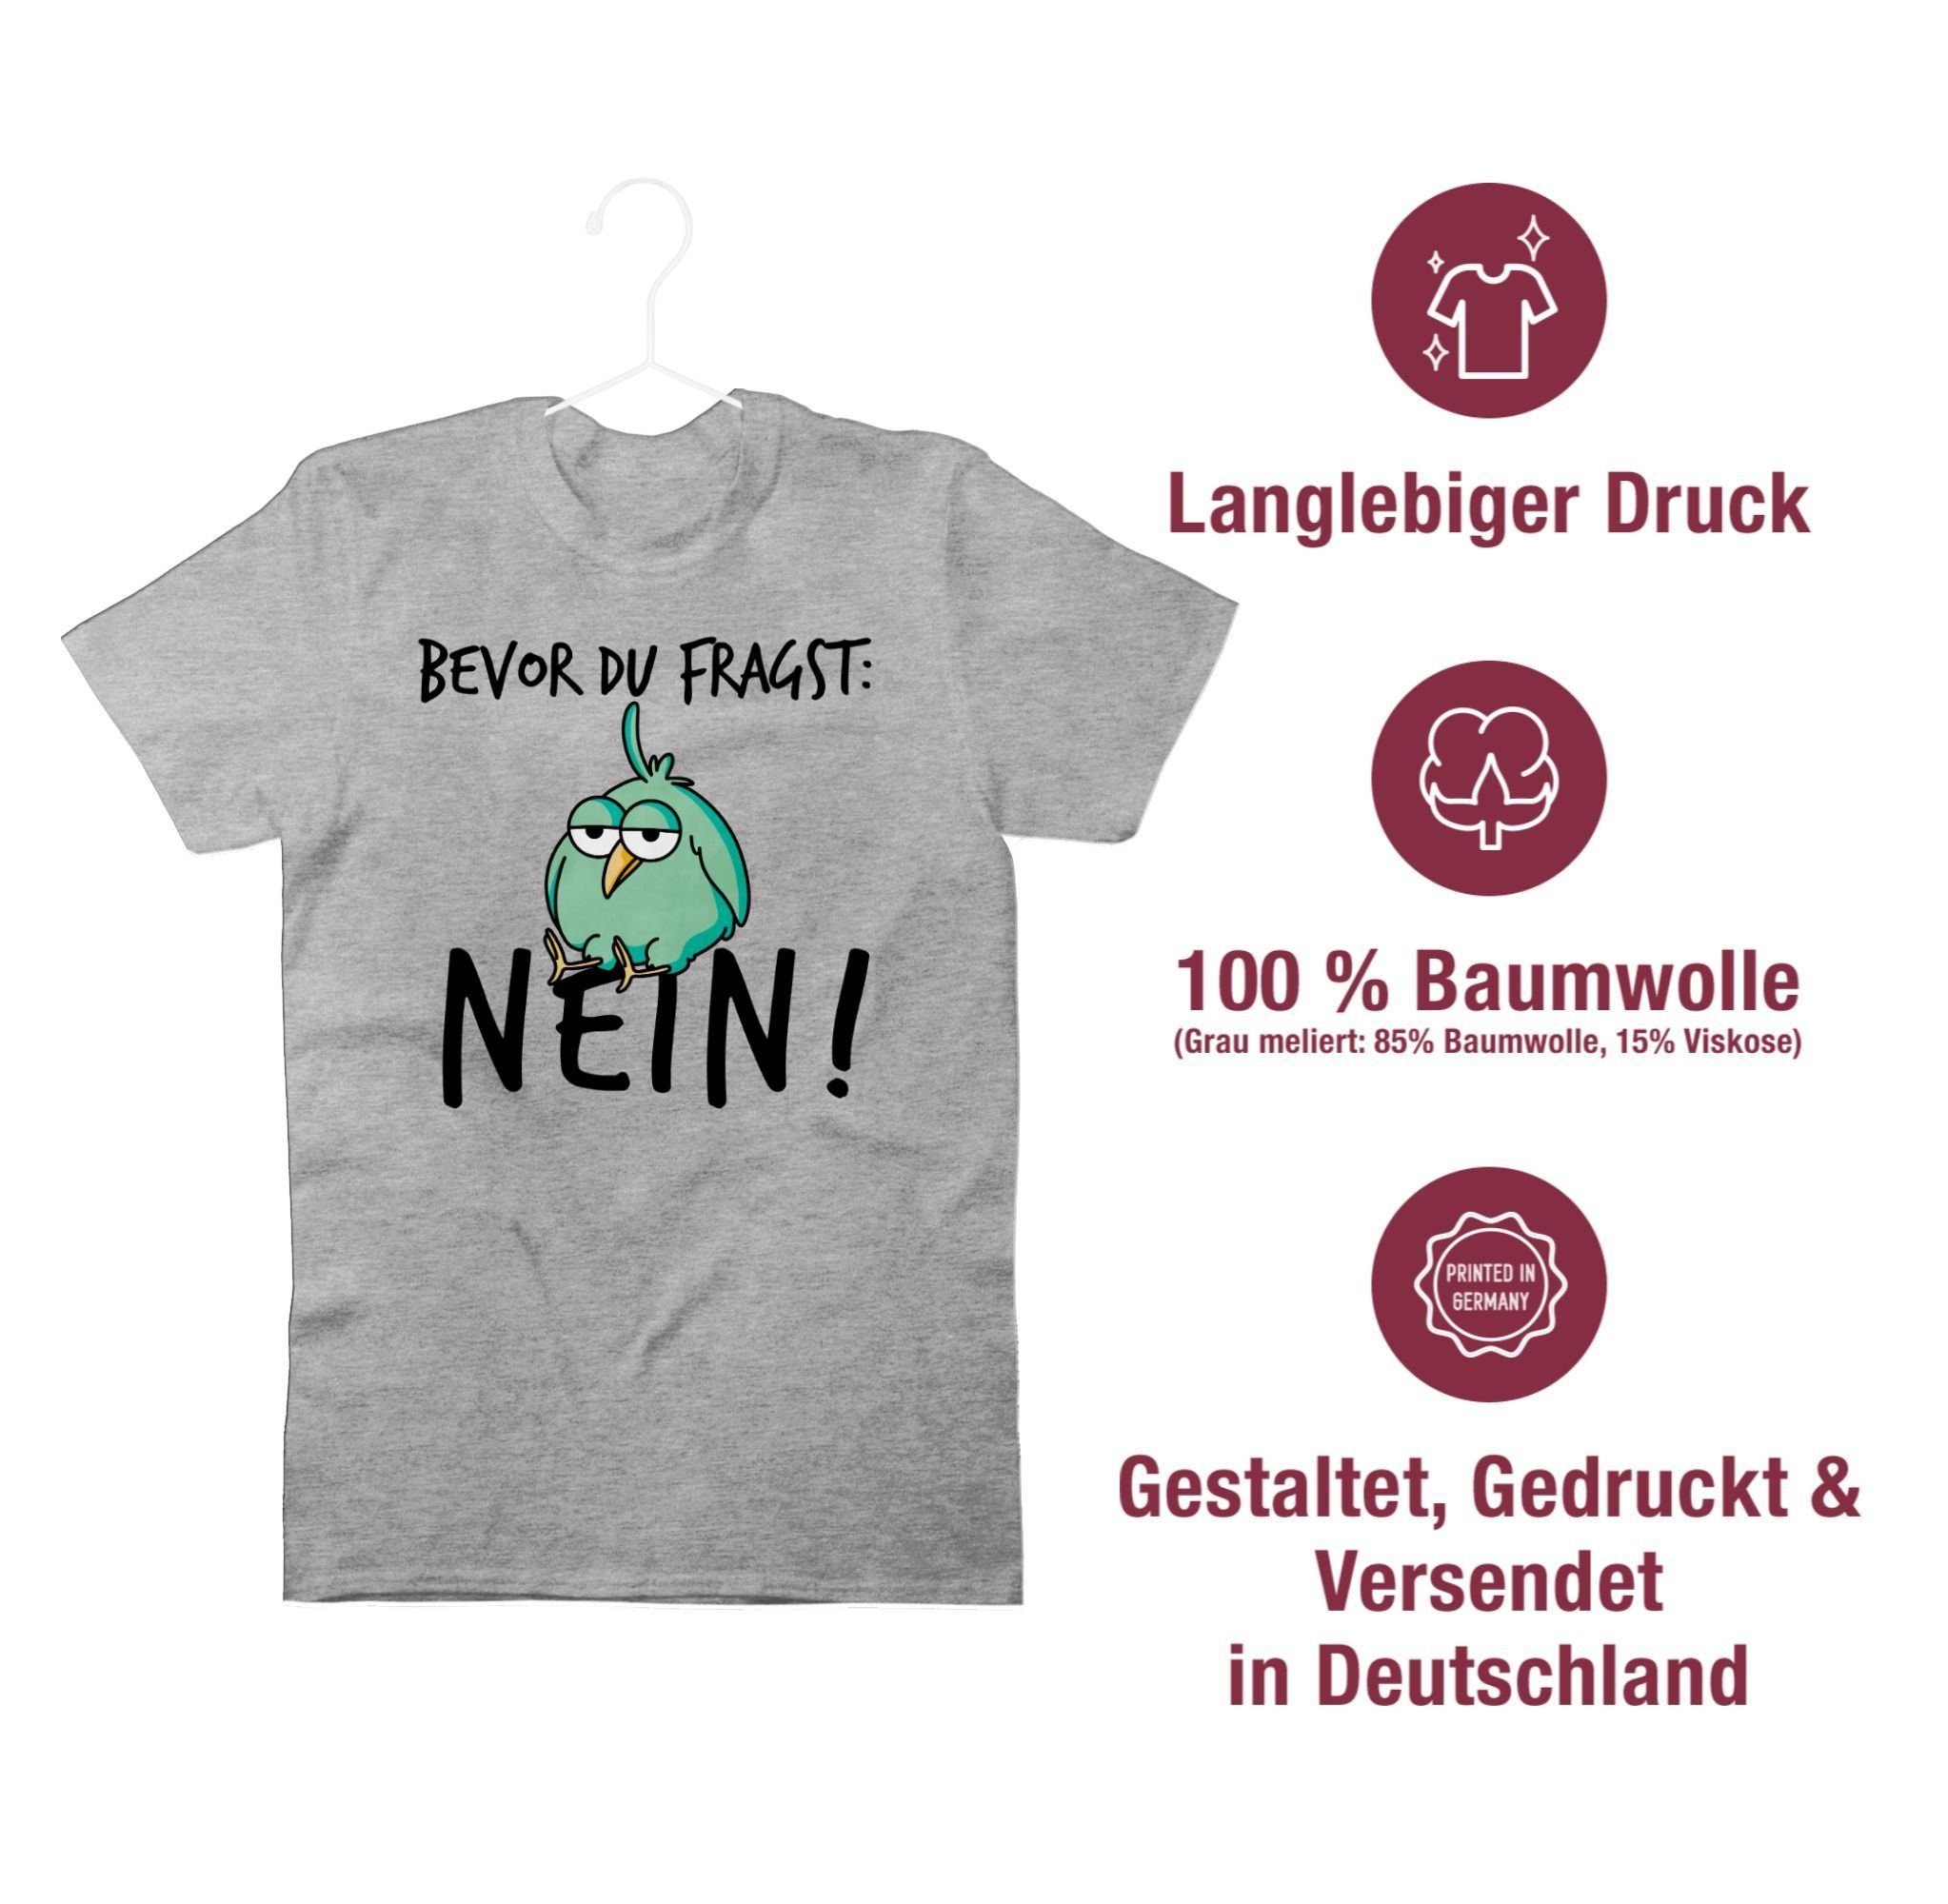 Shirtracer T-Shirt Bevor du fragst Grau 2 Sprüche meliert Lustig - Spruch Geschenk Nein mit Kollegen Statement